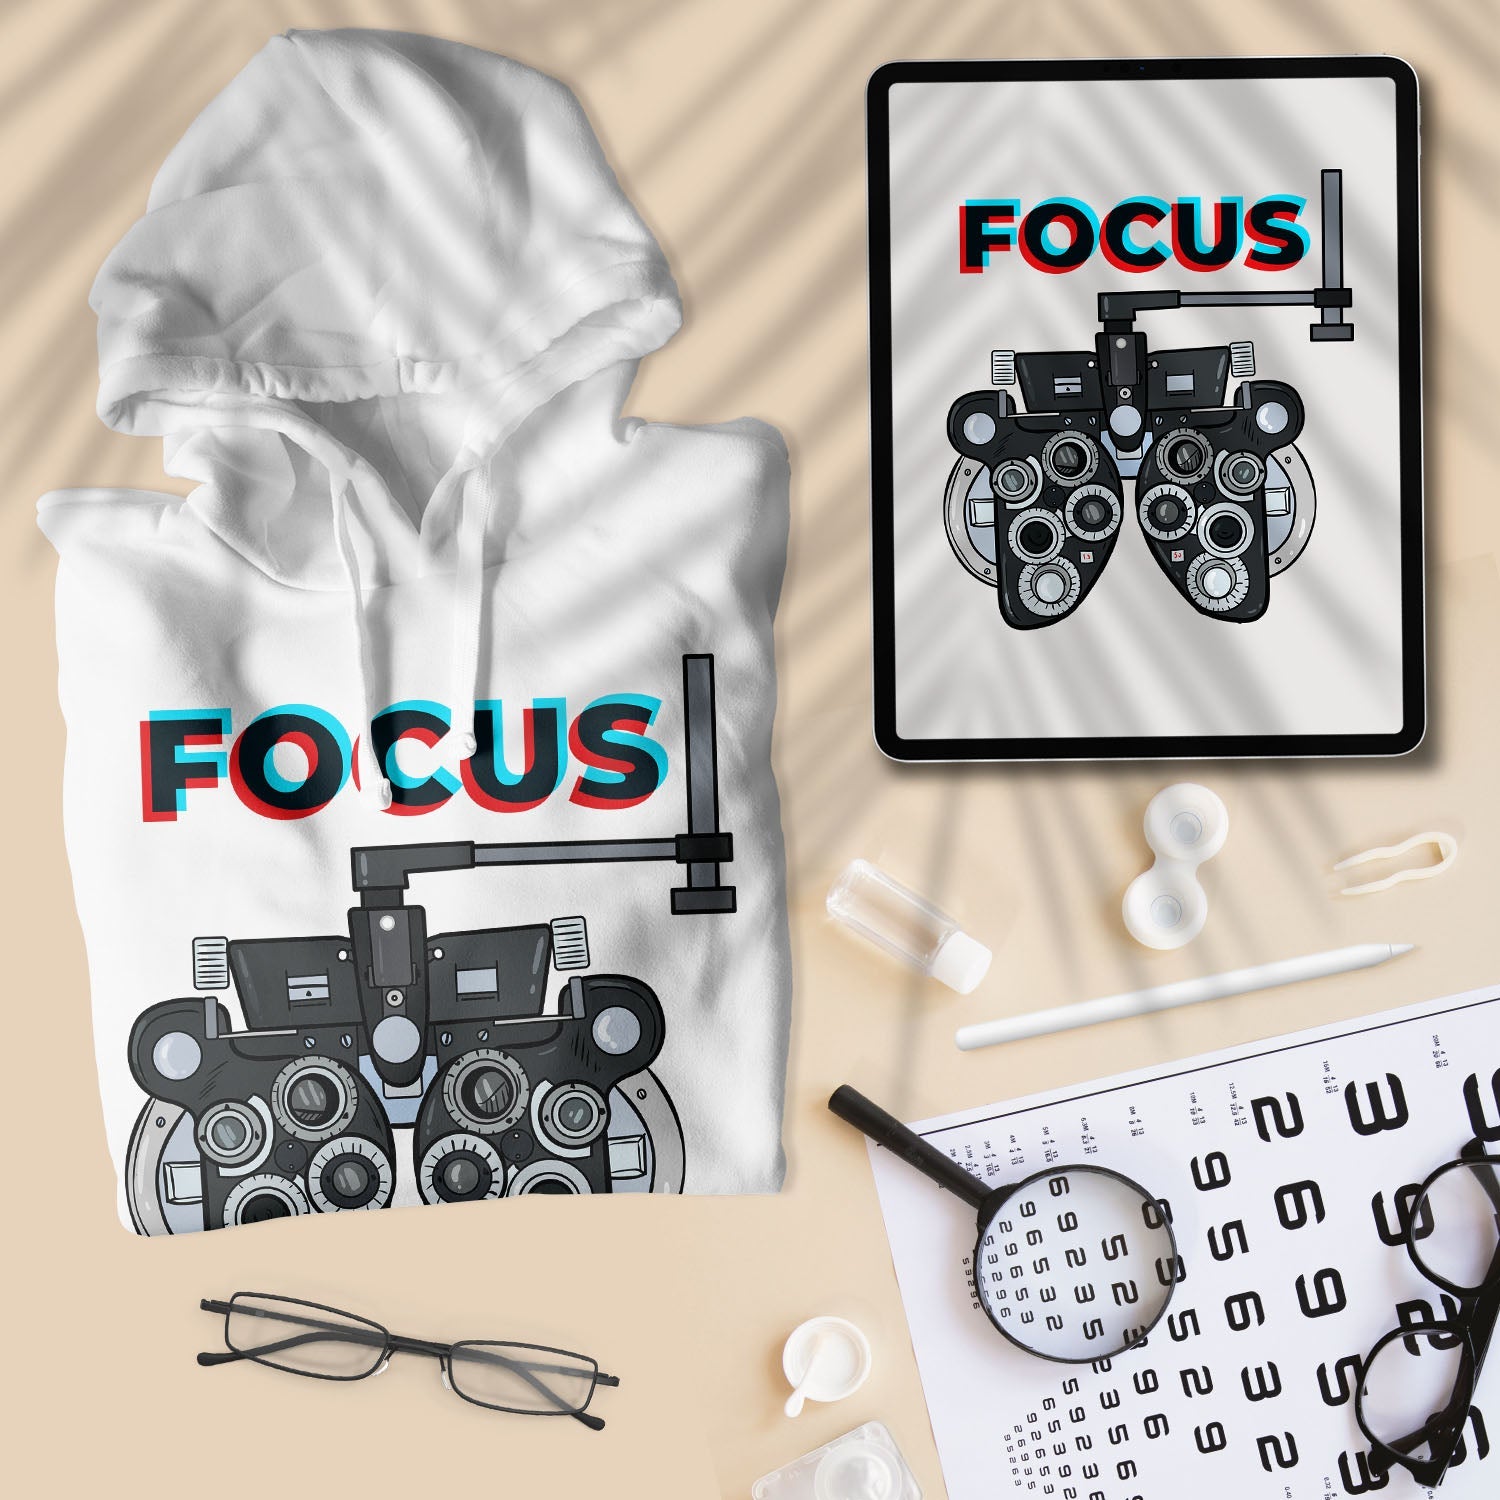 Focus - Unisex Hoodie